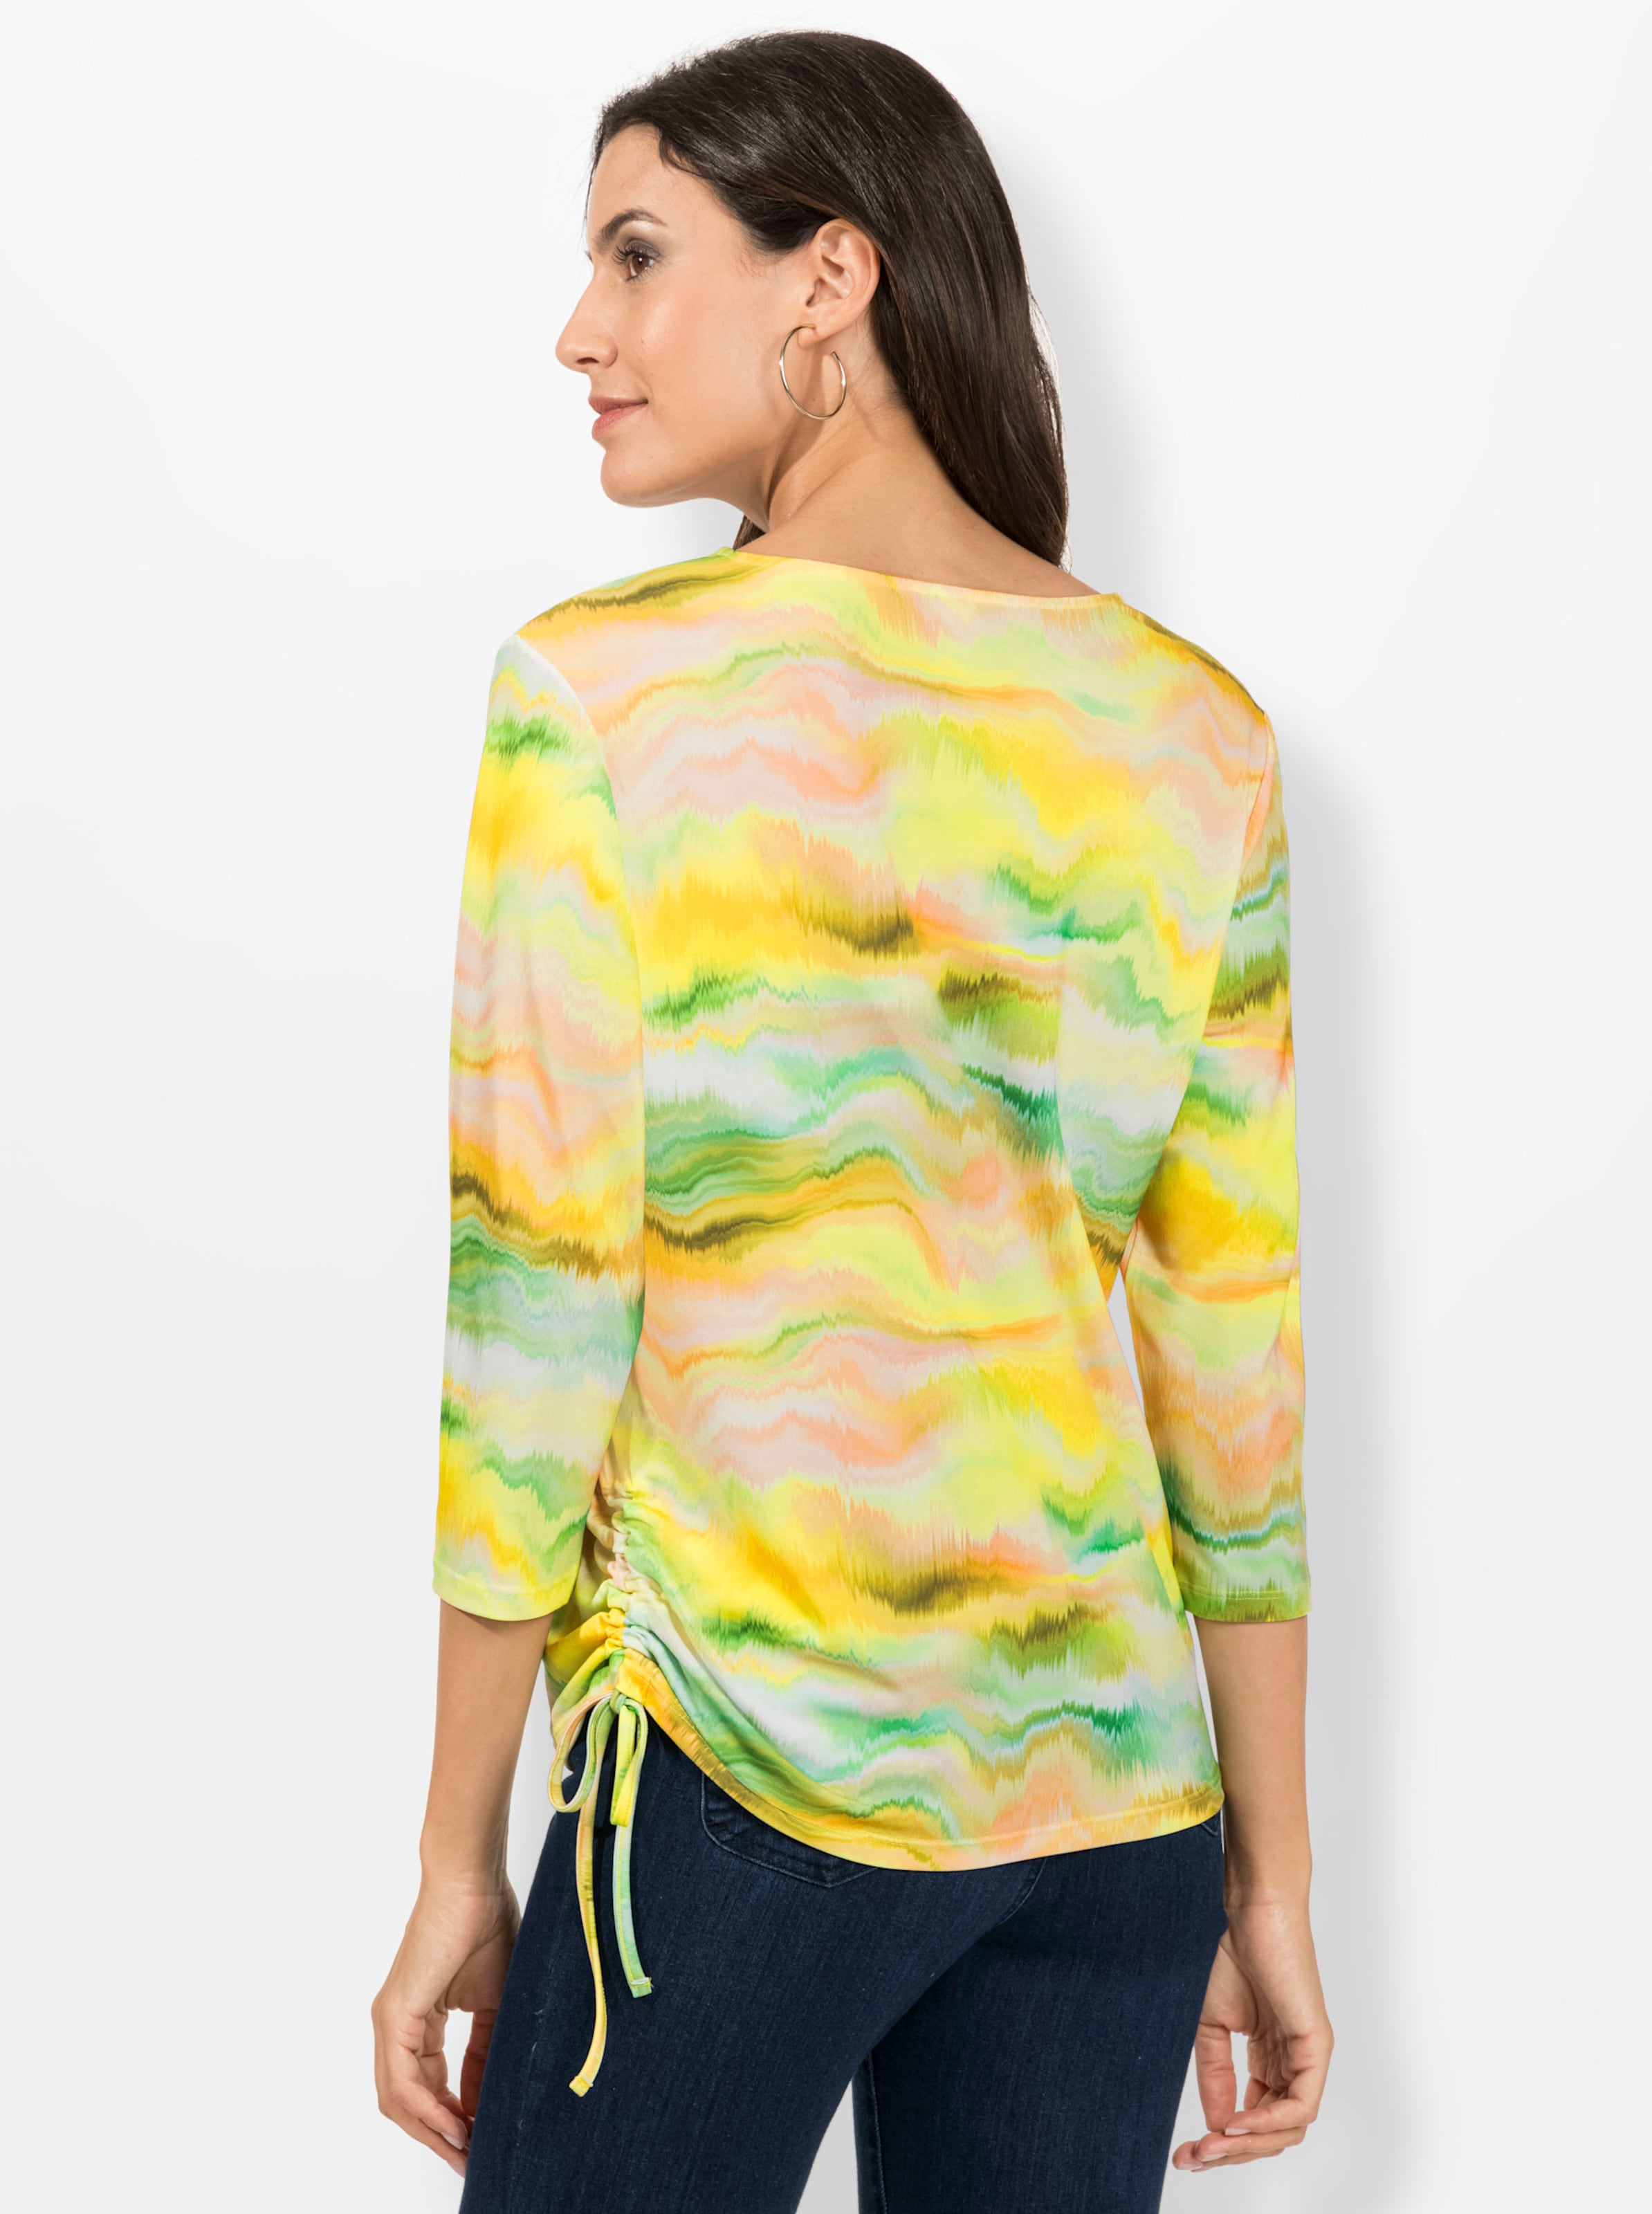 Tal der günstig Kaufen-Shirt in limone-puder-bedruckt von heine. Shirt in limone-puder-bedruckt von heine <![CDATA[Ein Shirt mit Wow-Effekt: Lassen auch Sie sich begeistern von dem fantasievollen Digital-Print in leuchtenden Farben! Mit Rundhals-Ausschnitt, 3/4-Ärmeln und dopp